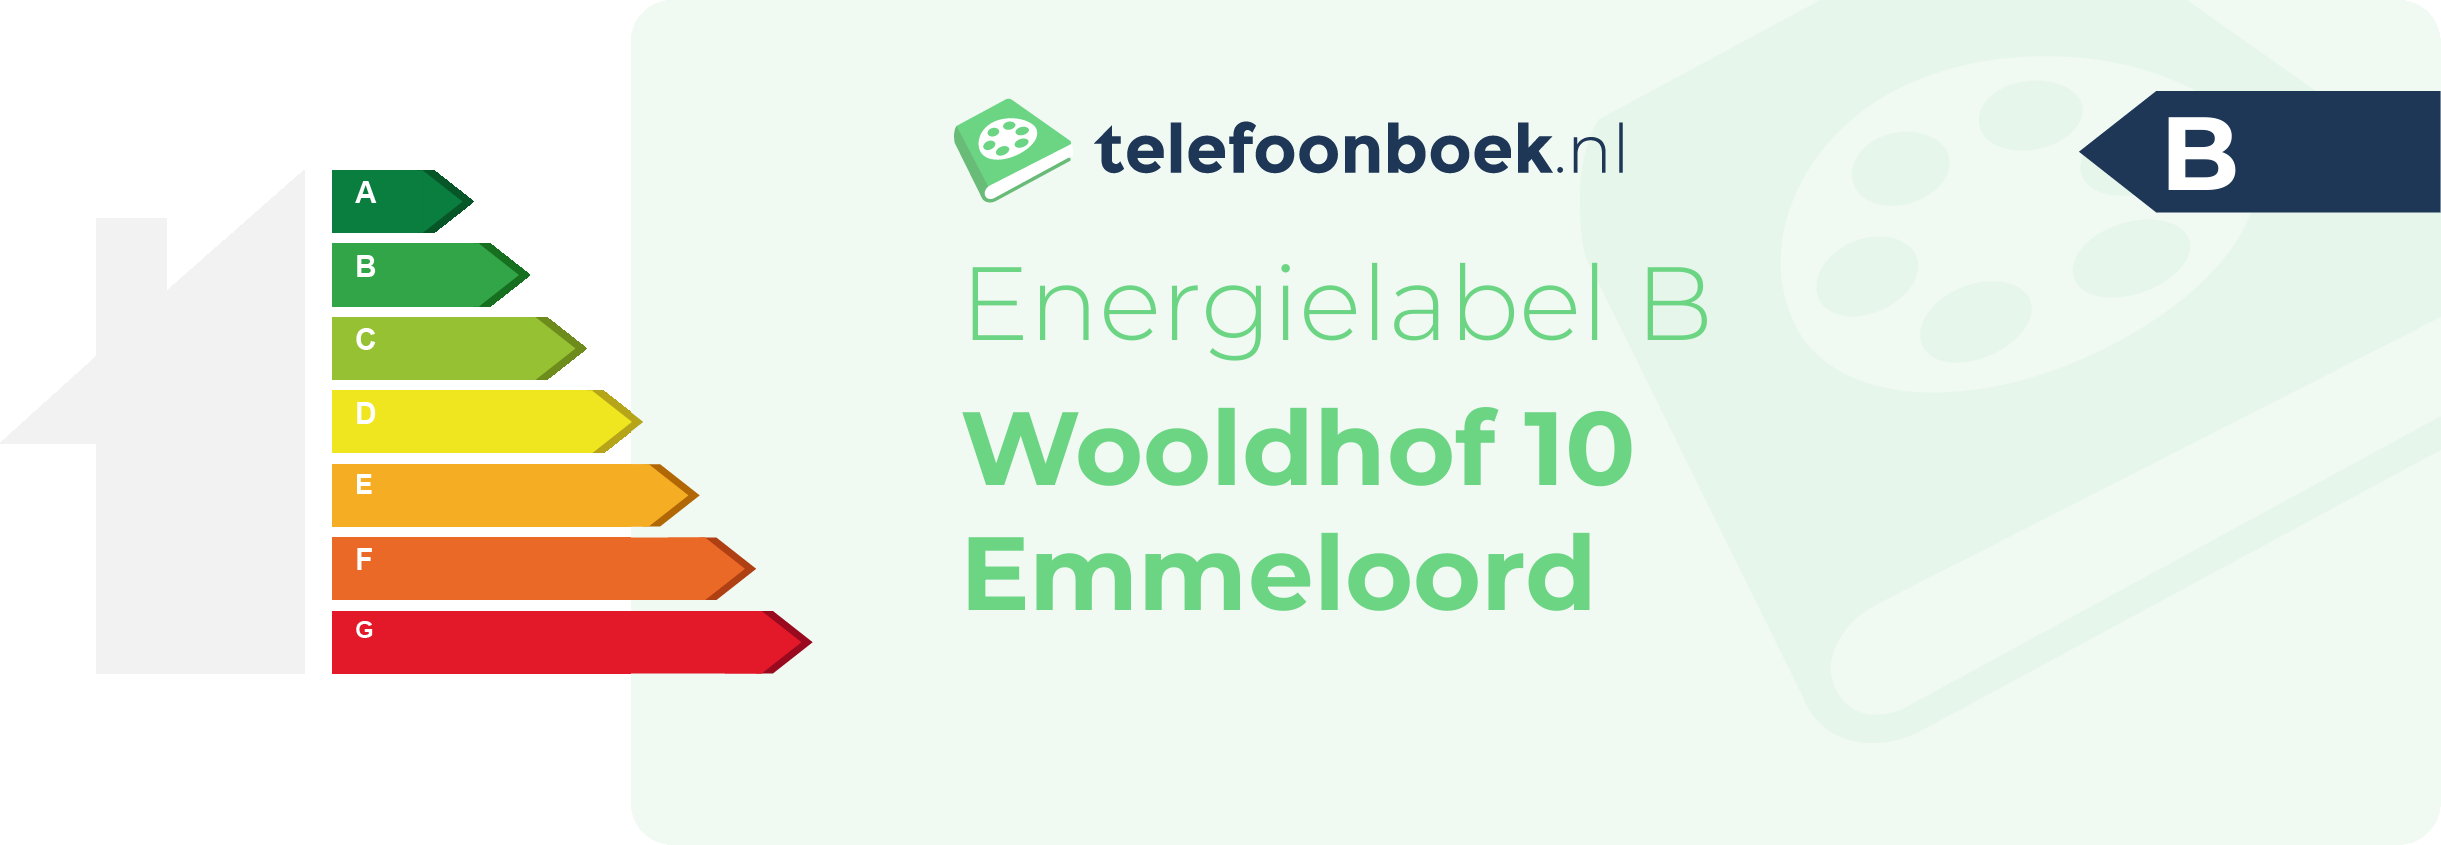 Energielabel Wooldhof 10 Emmeloord